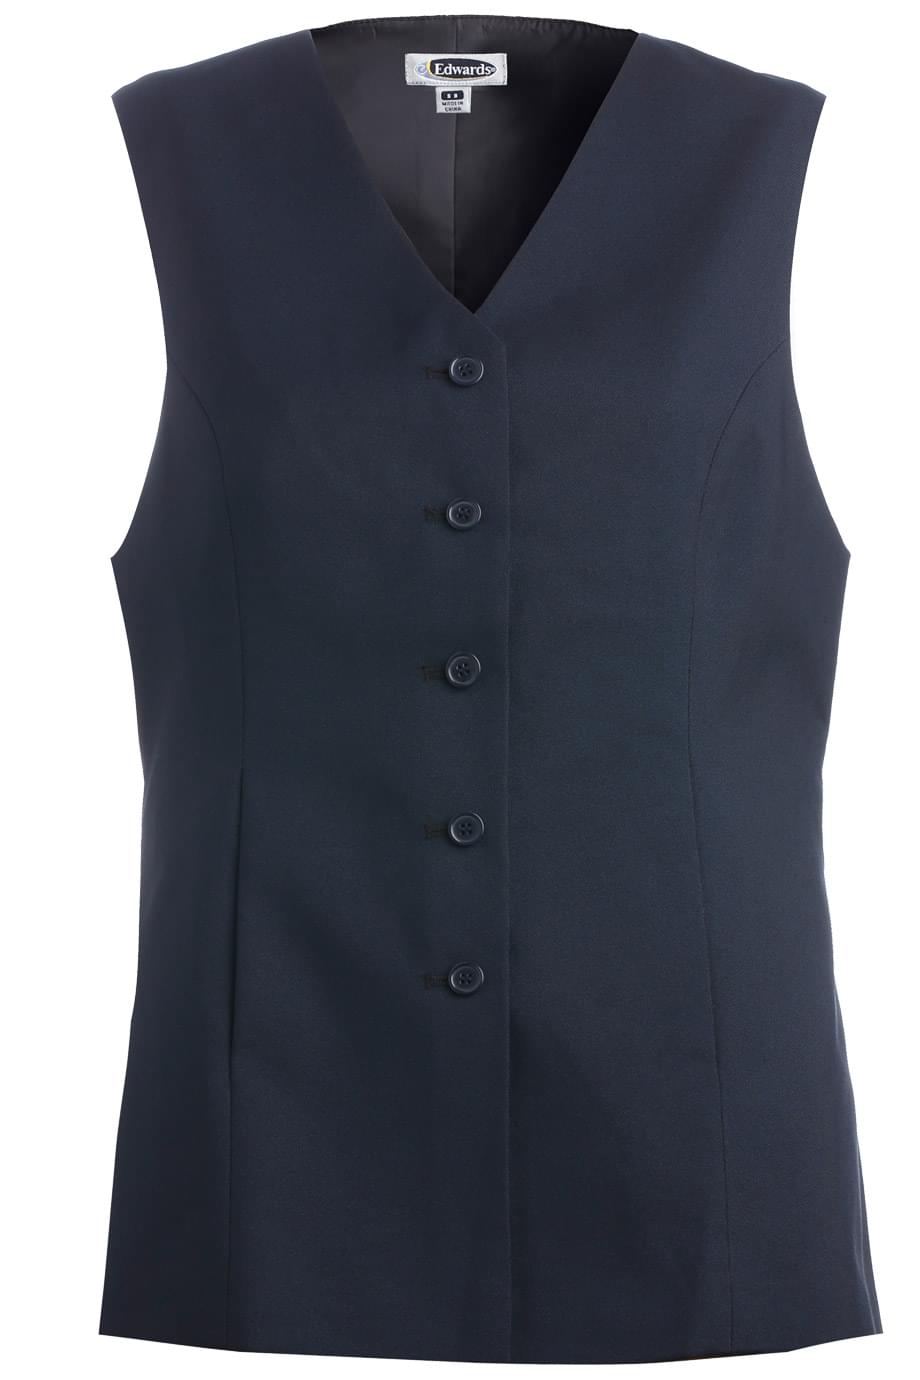 Edwards XS Ladies' Dark Navy Essential Polyester Vest (6 Buttons)